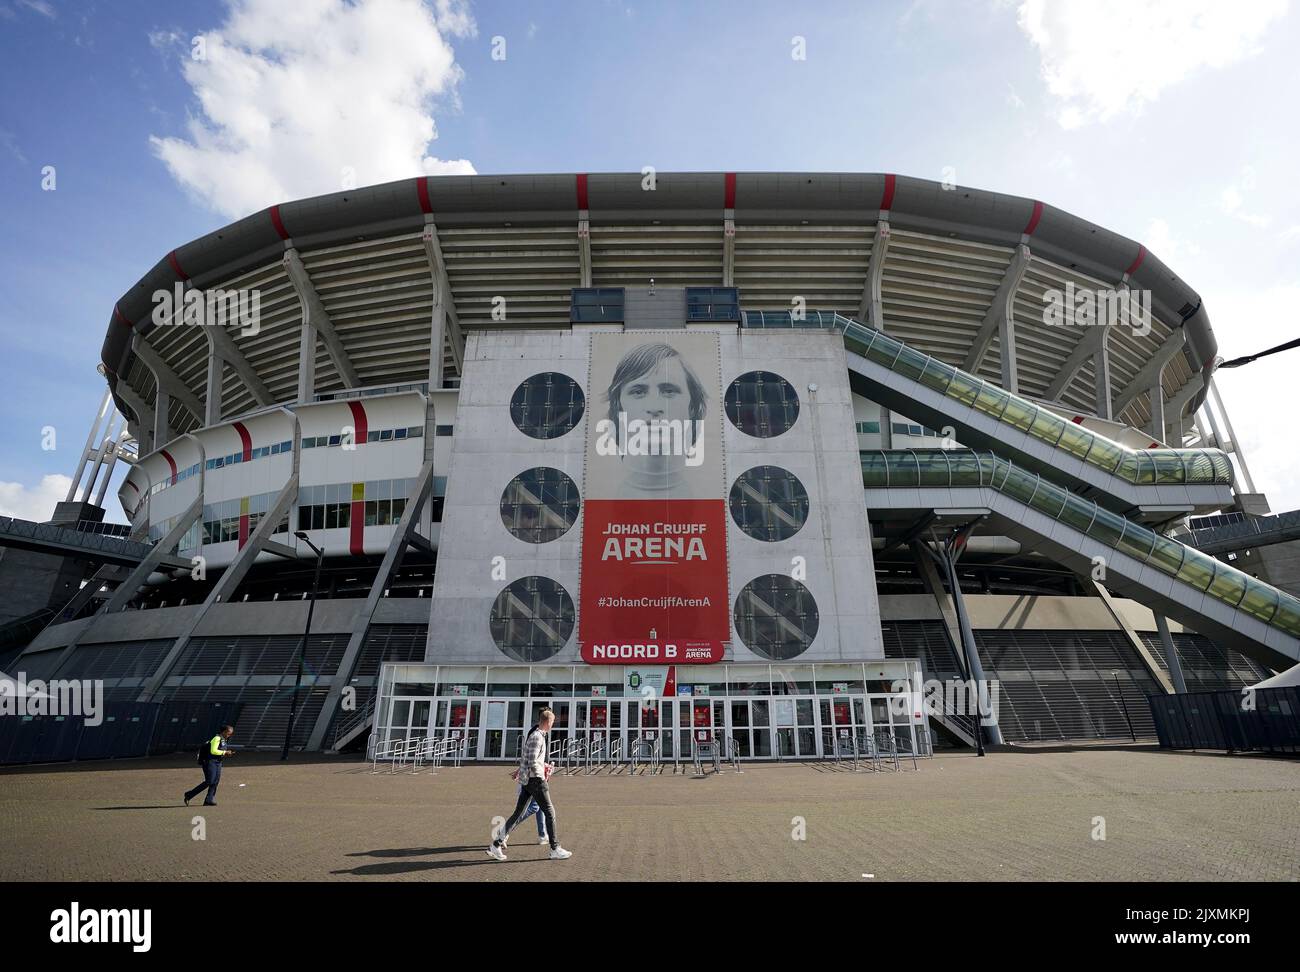 Ein Blick außerhalb des Bodens vor dem Spiel der UEFA Champions League Gruppe F in der Johan Cruyff Arena in Amsterdam, Niederlande. Bilddatum: Mittwoch, 7. September 2022. Stockfoto